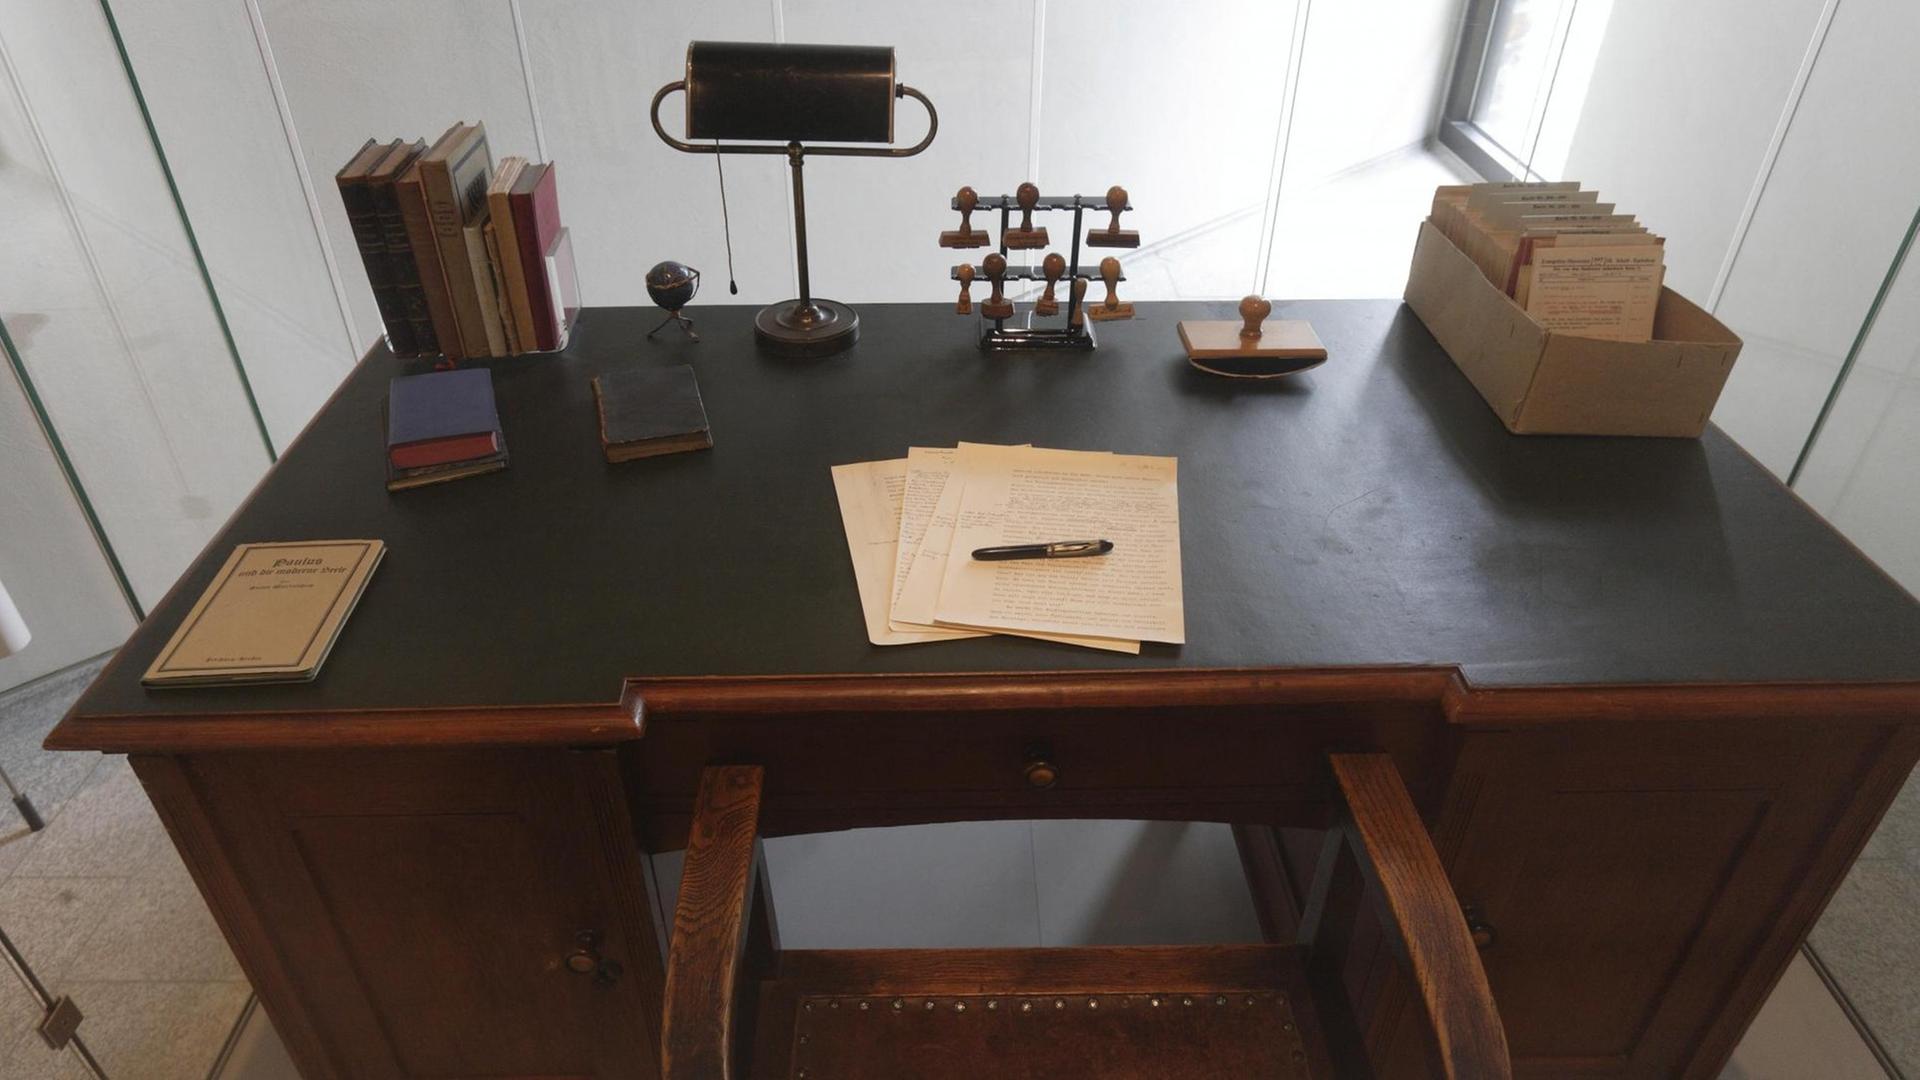 Ein alter Schreibtisch mit Büromaterial: Stiften, Papier, Zettelkasten.